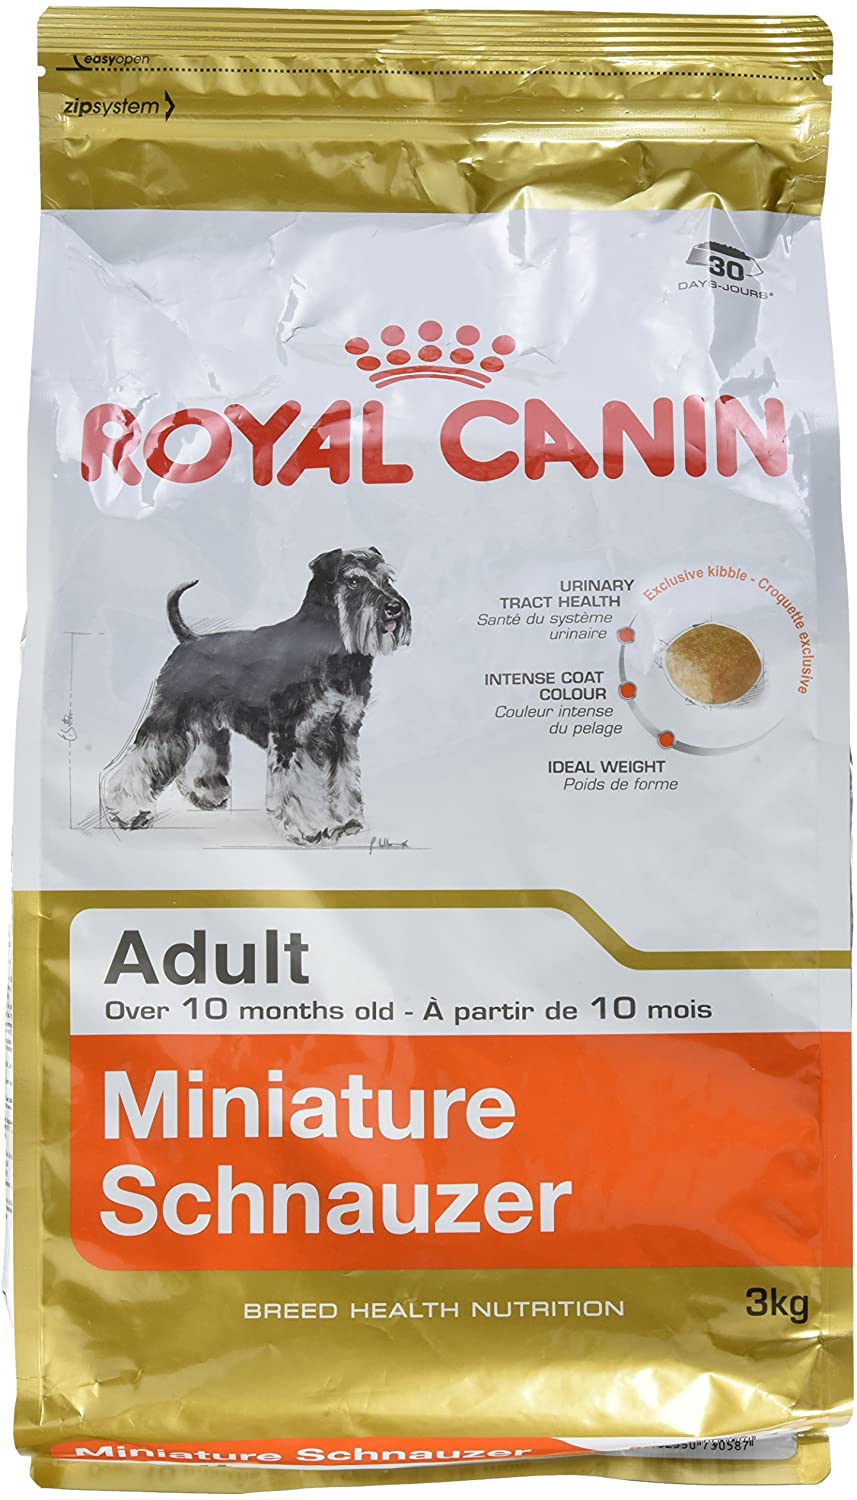  Royal Canin C-08985 S.N. Schnauzer 25 - 3 Kg 